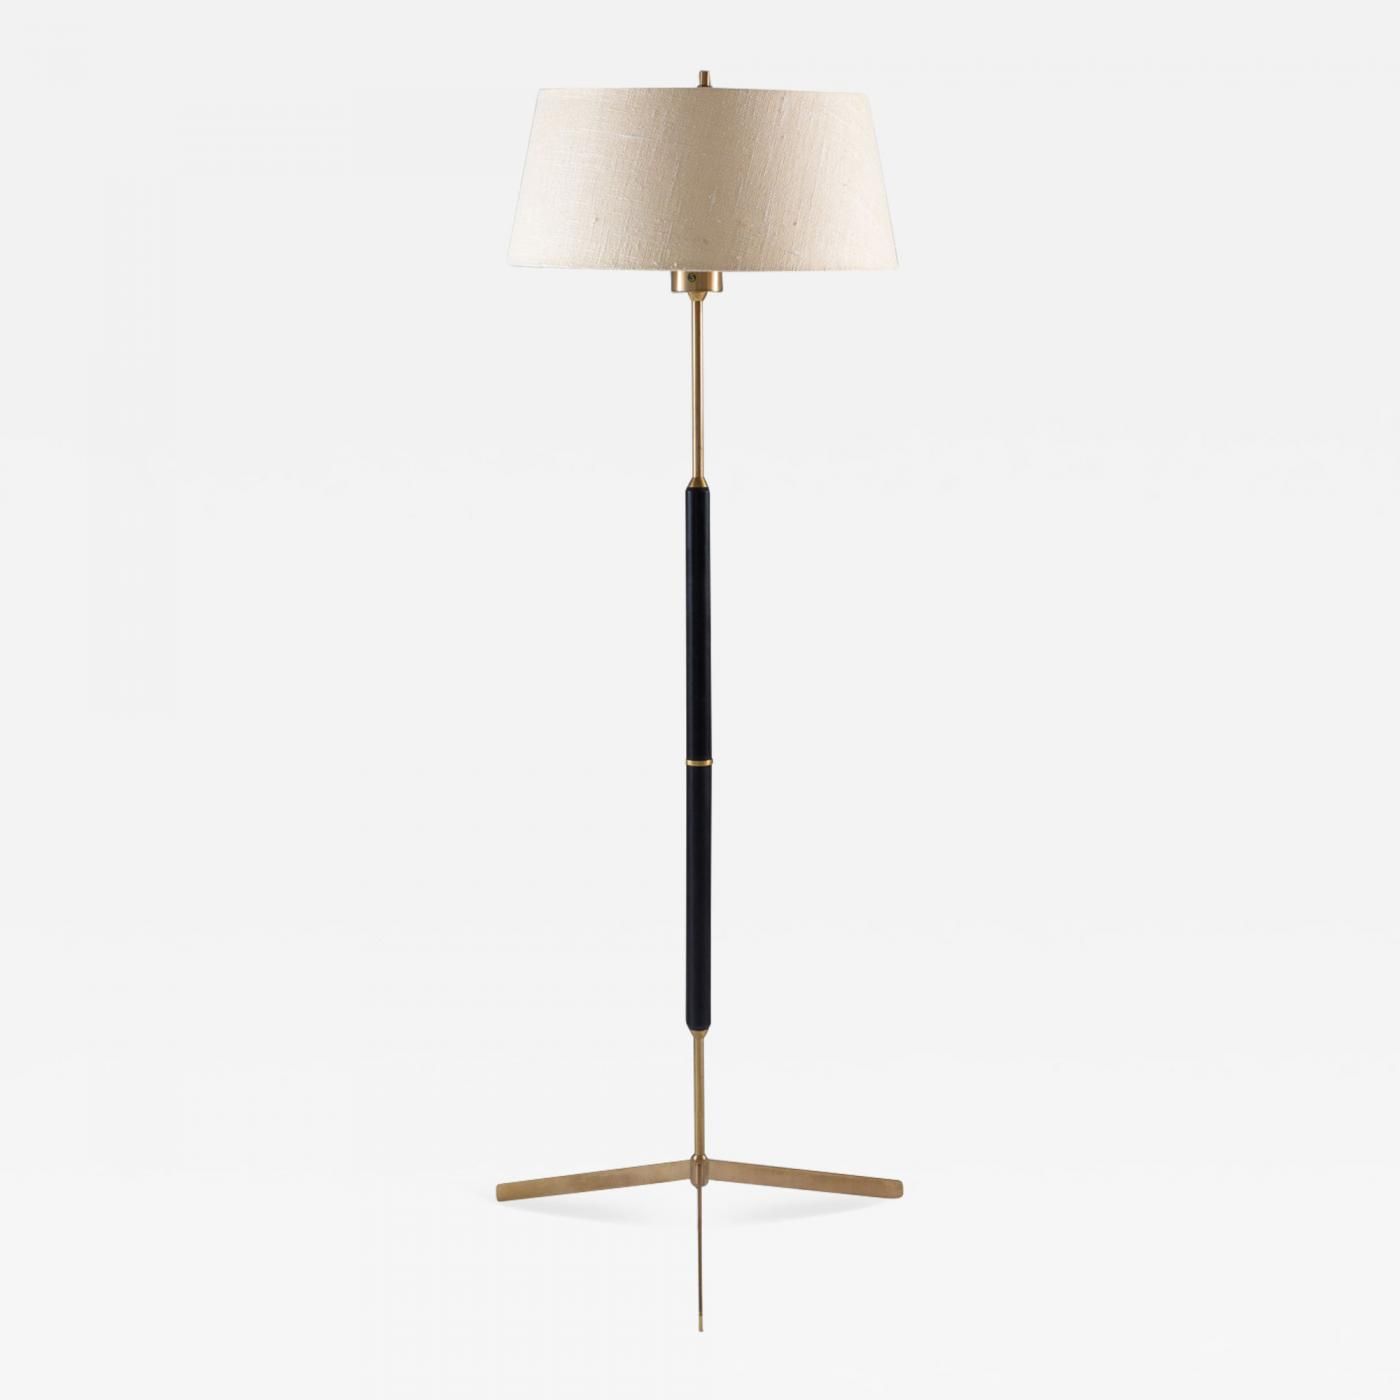 Bergboms – Scandinavian Midcentury Floor Lamp In Brass And Wood Bergboms, Sweden Inside Mid Century Floor Lamps (View 8 of 15)